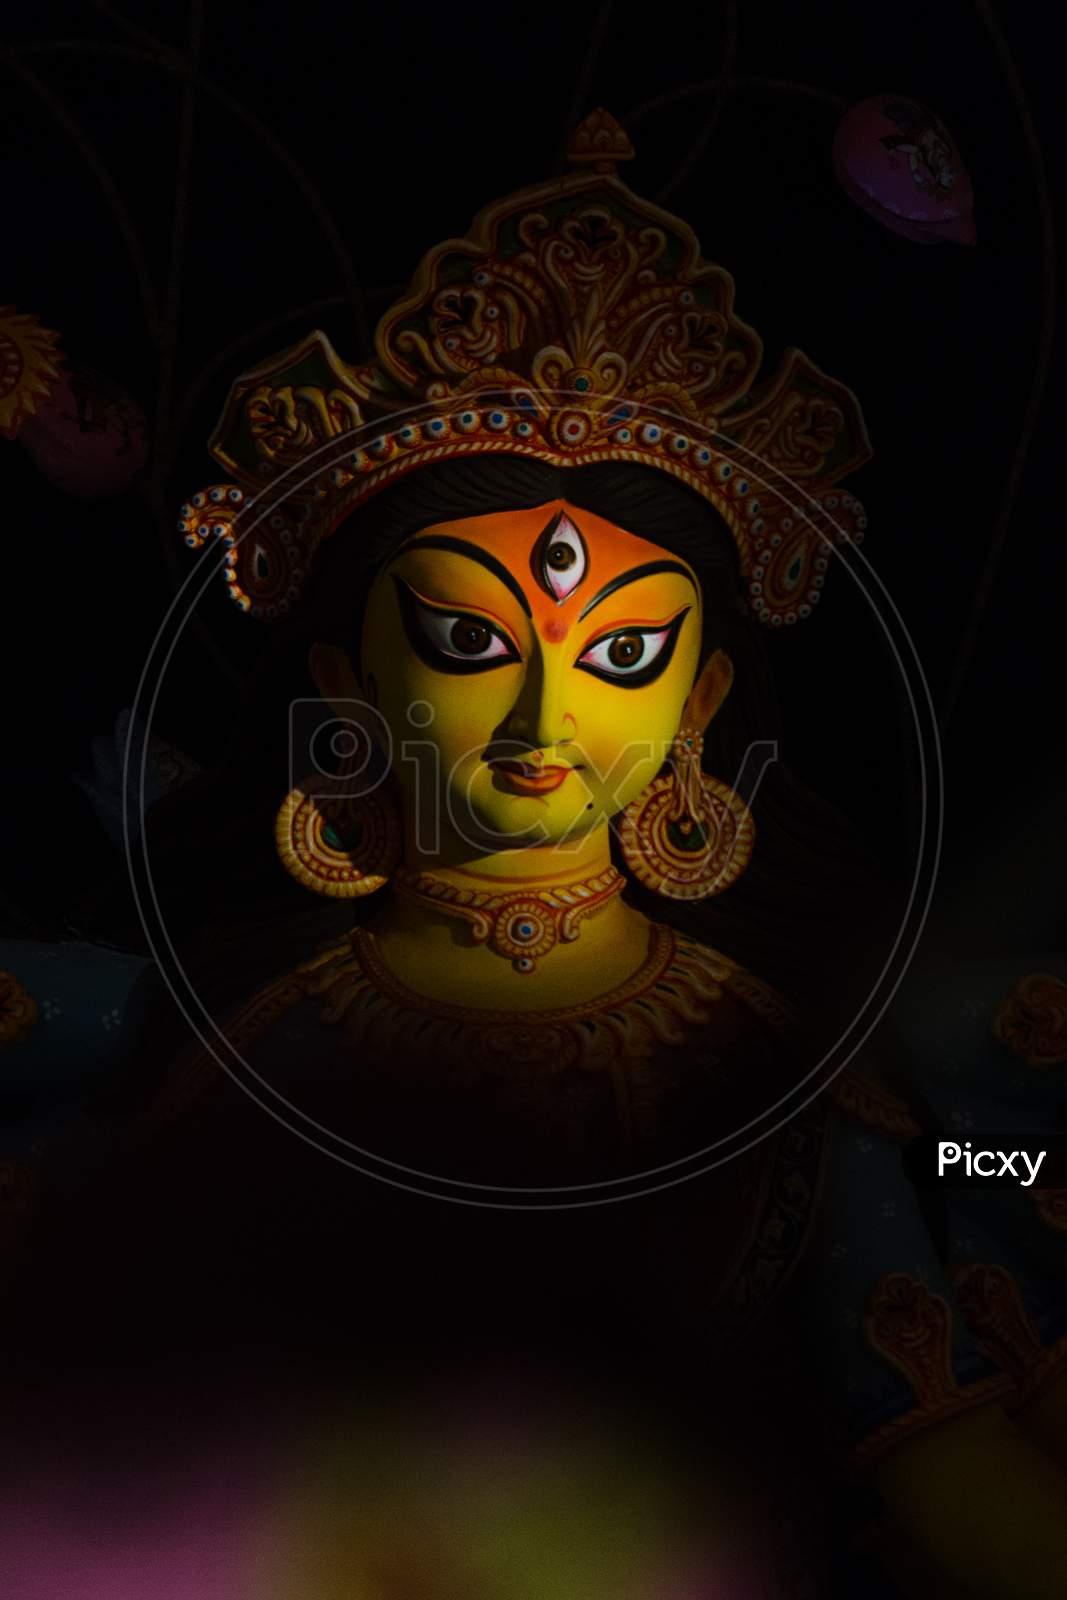 Close up of Maa Durga's face during Durga Puja.